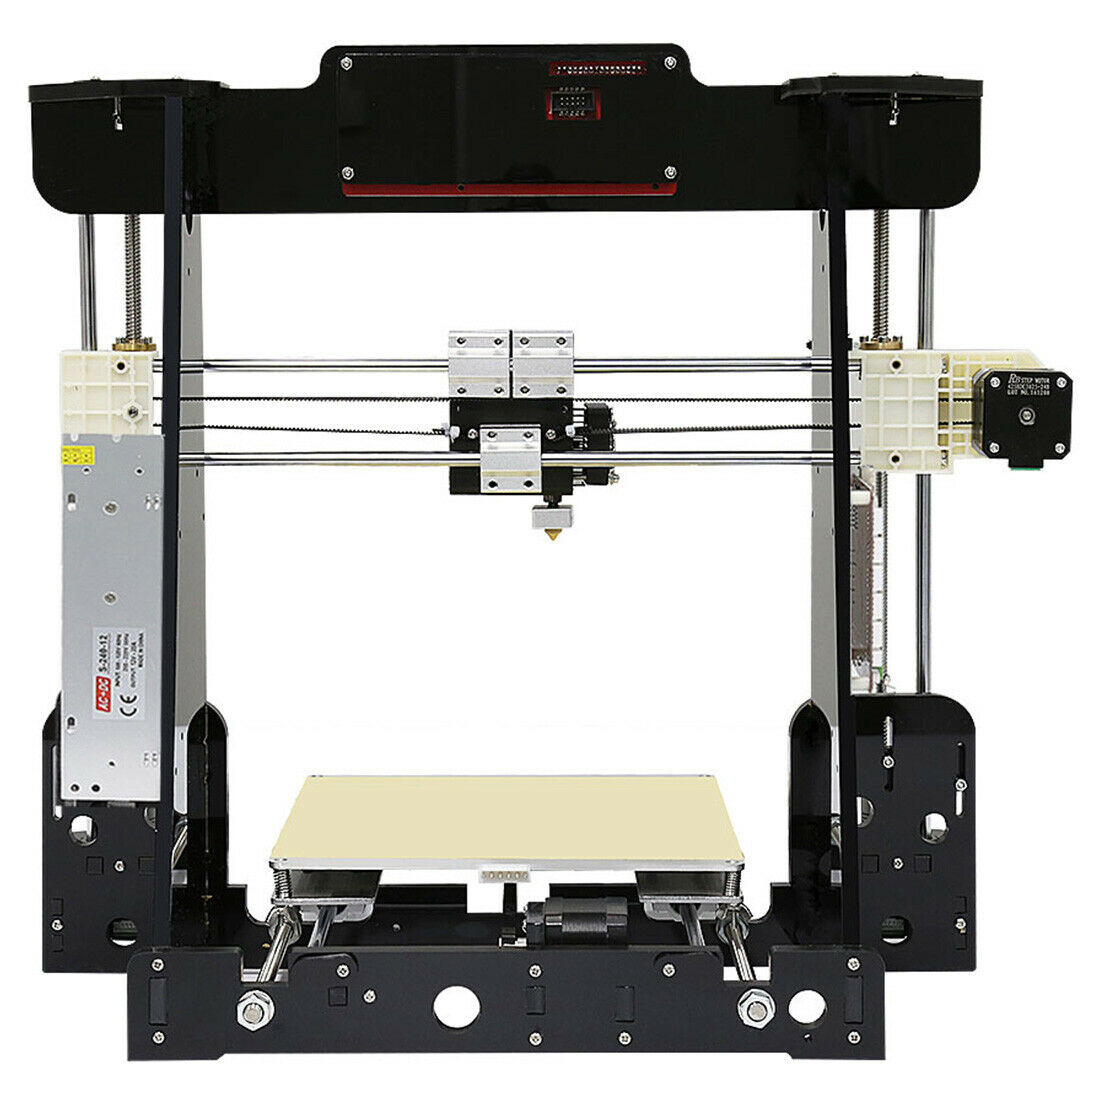 Anet A8 Desktop 3D Printer Prusa I3 DIY Kit
 Anet A8 Desktop 3D Printer Prusa i3 DIY Kit Stampante 3D